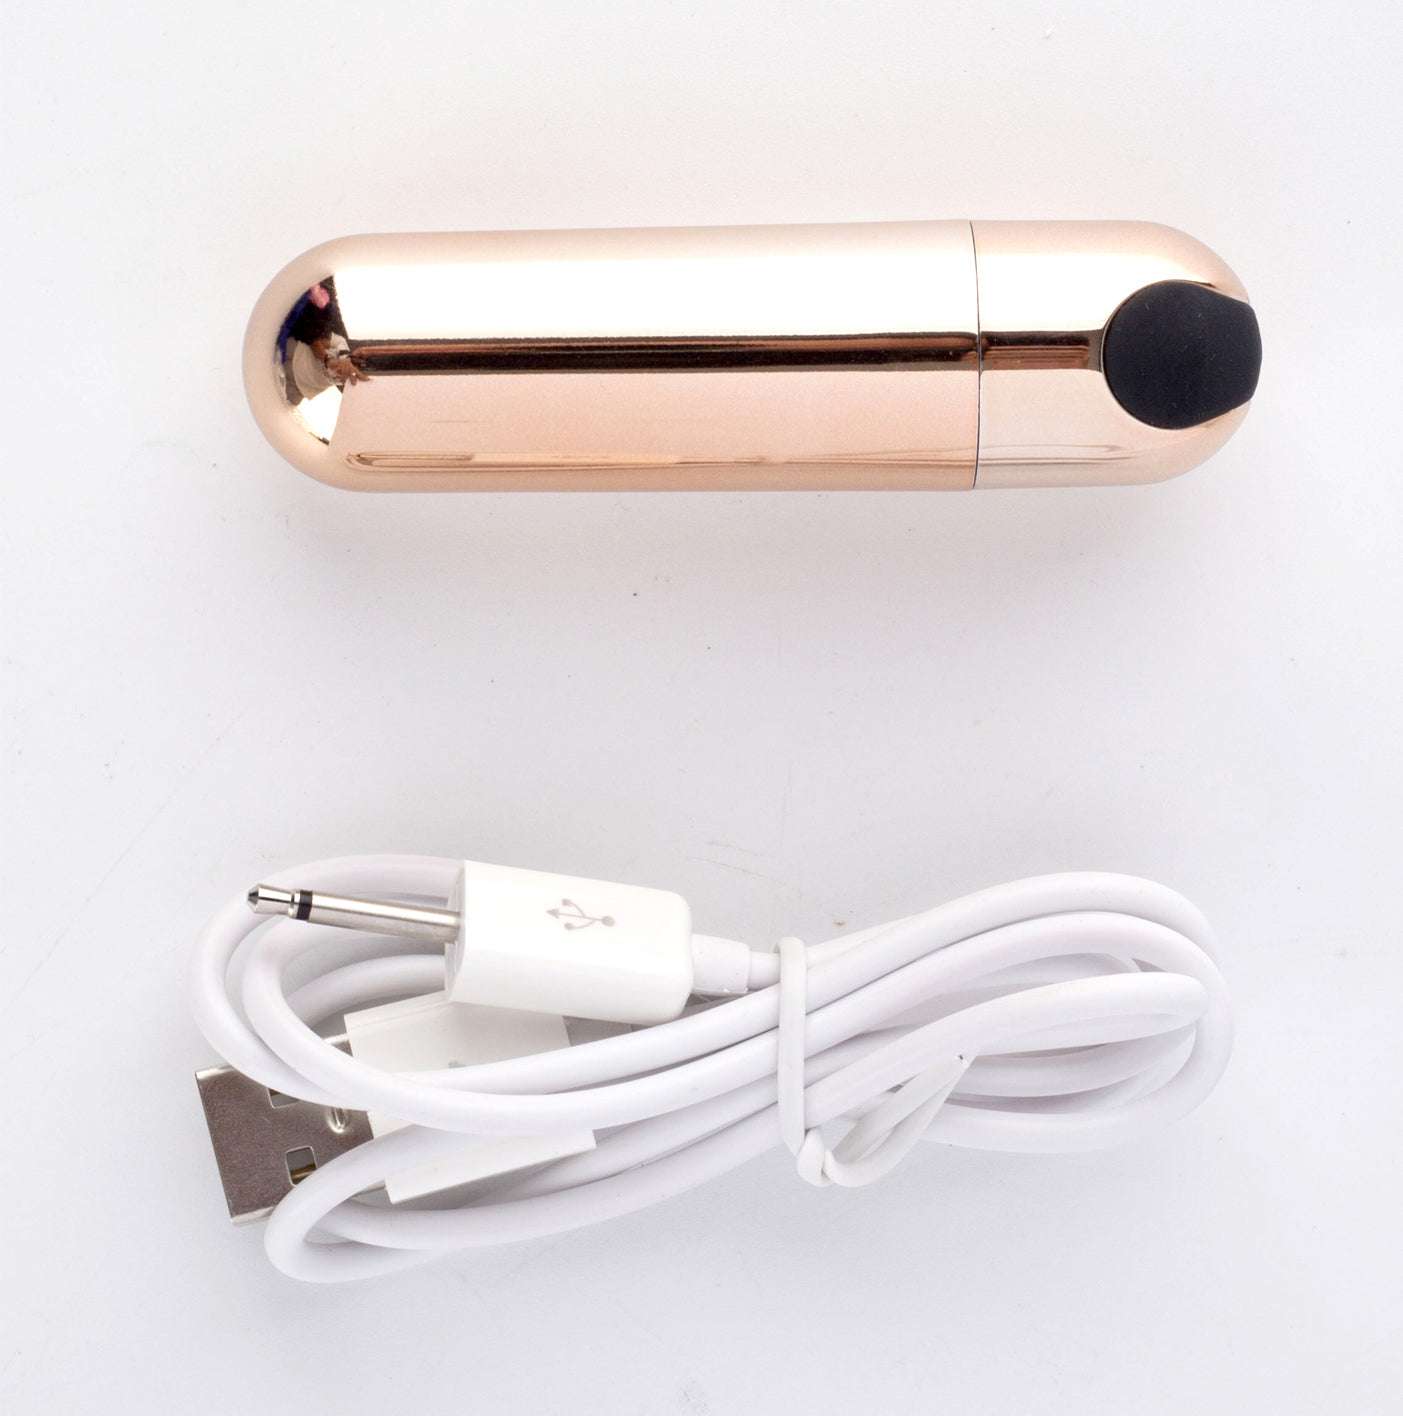 Jessi Gold Super Charged Mini Bullet Vibrator - Rose Gold